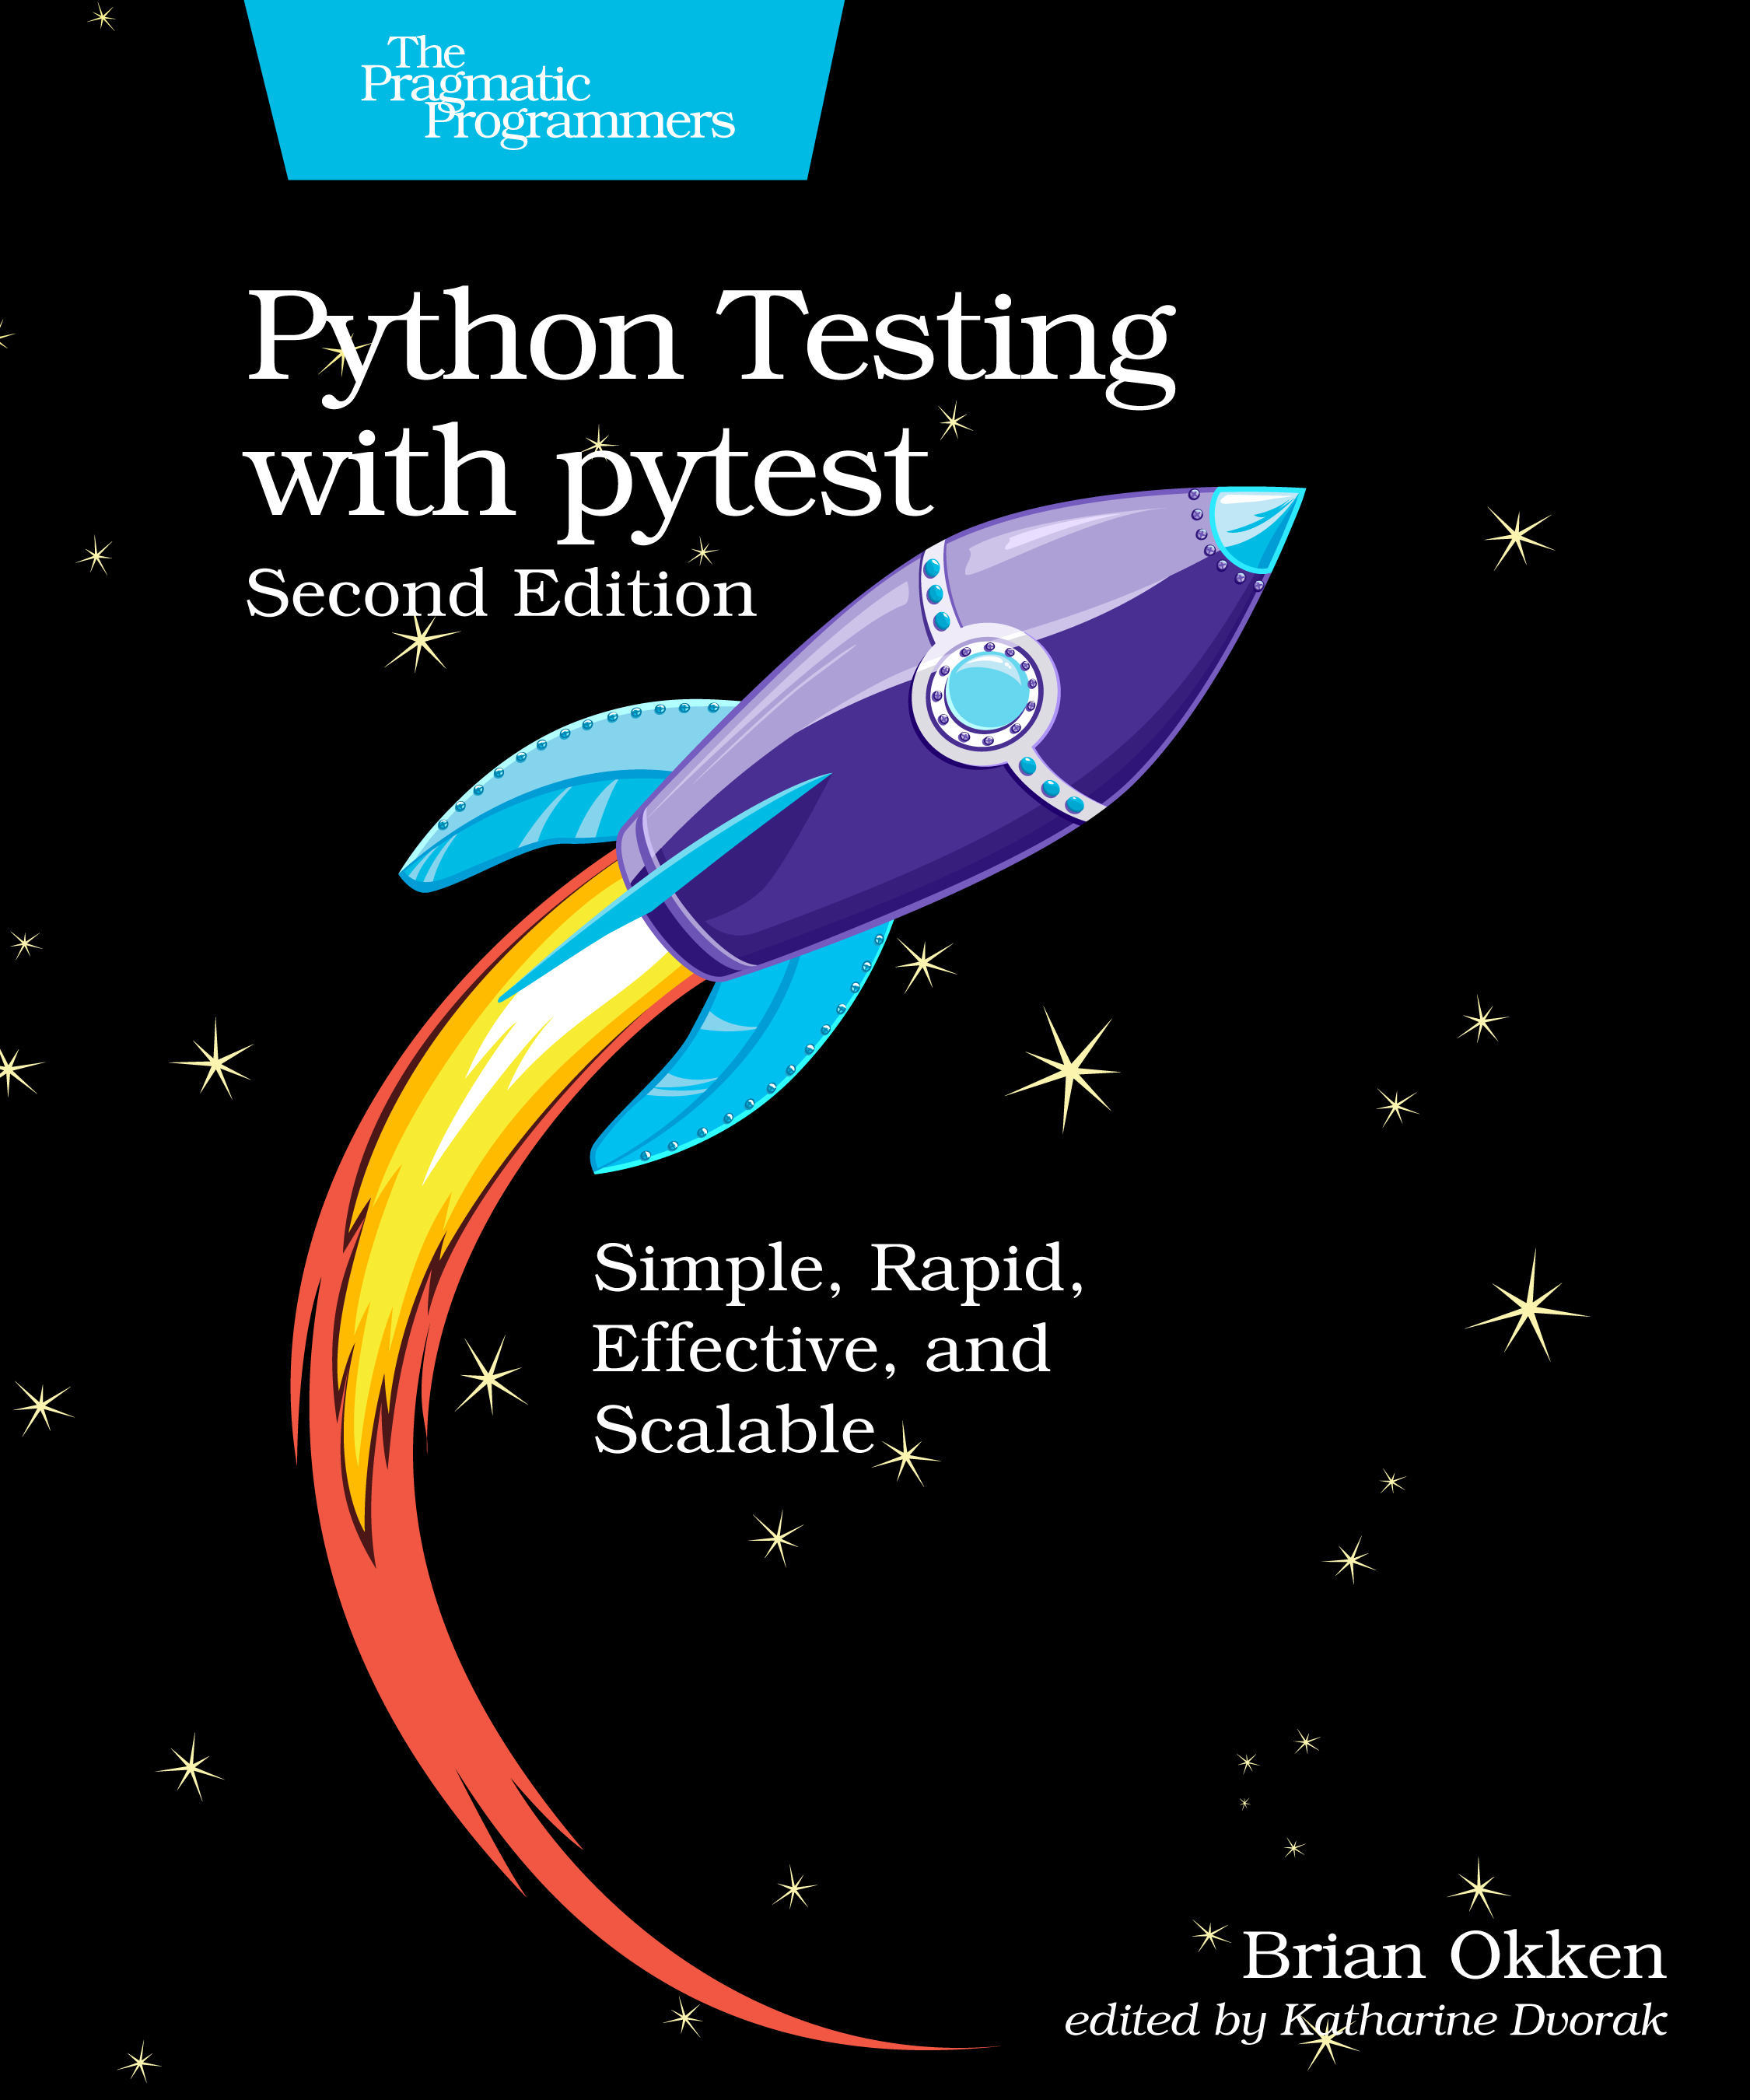 https://pragprog.com/titles/bopytest2/python-testing-with-pytest-second-edition/bopytest2.jpg